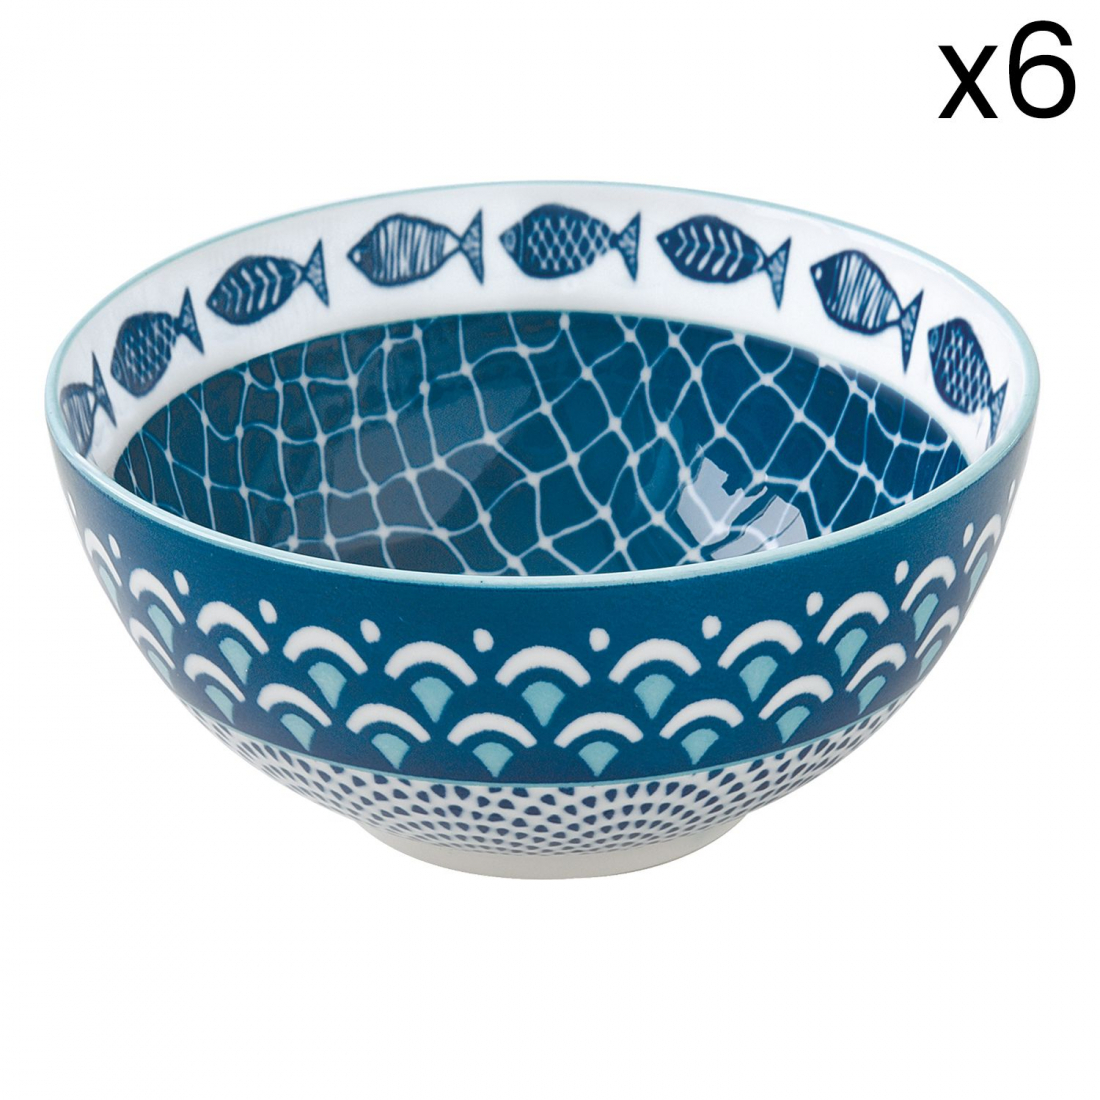 Set 6 Porcelain Bowls Dia. 12.5cm Sea Shore